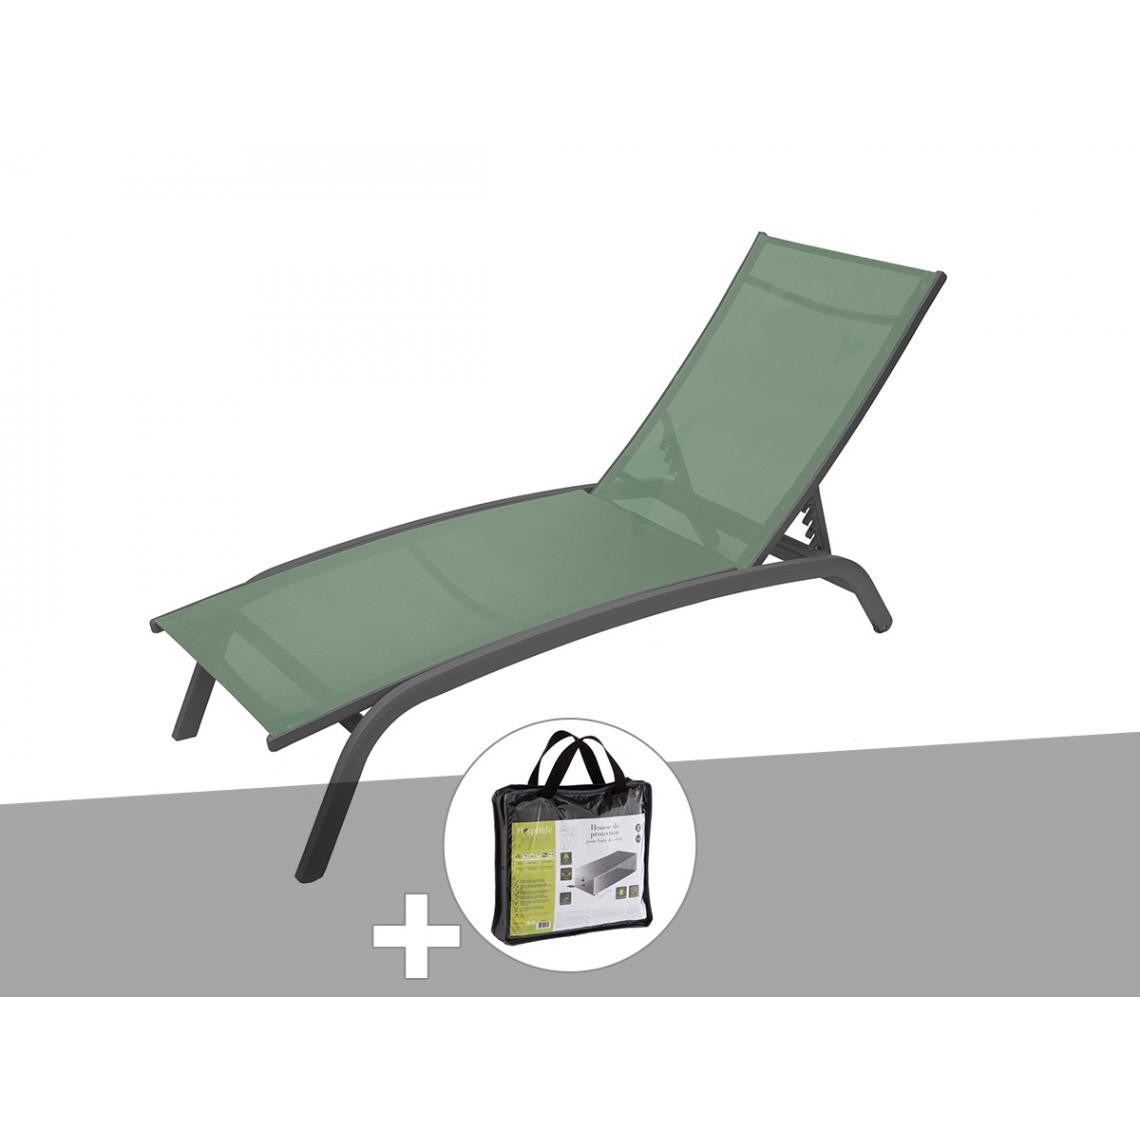 Hesperide - Transat en texaline Bonao Olive/Graphite avec housse de protection - Hespéride - Transats, chaises longues